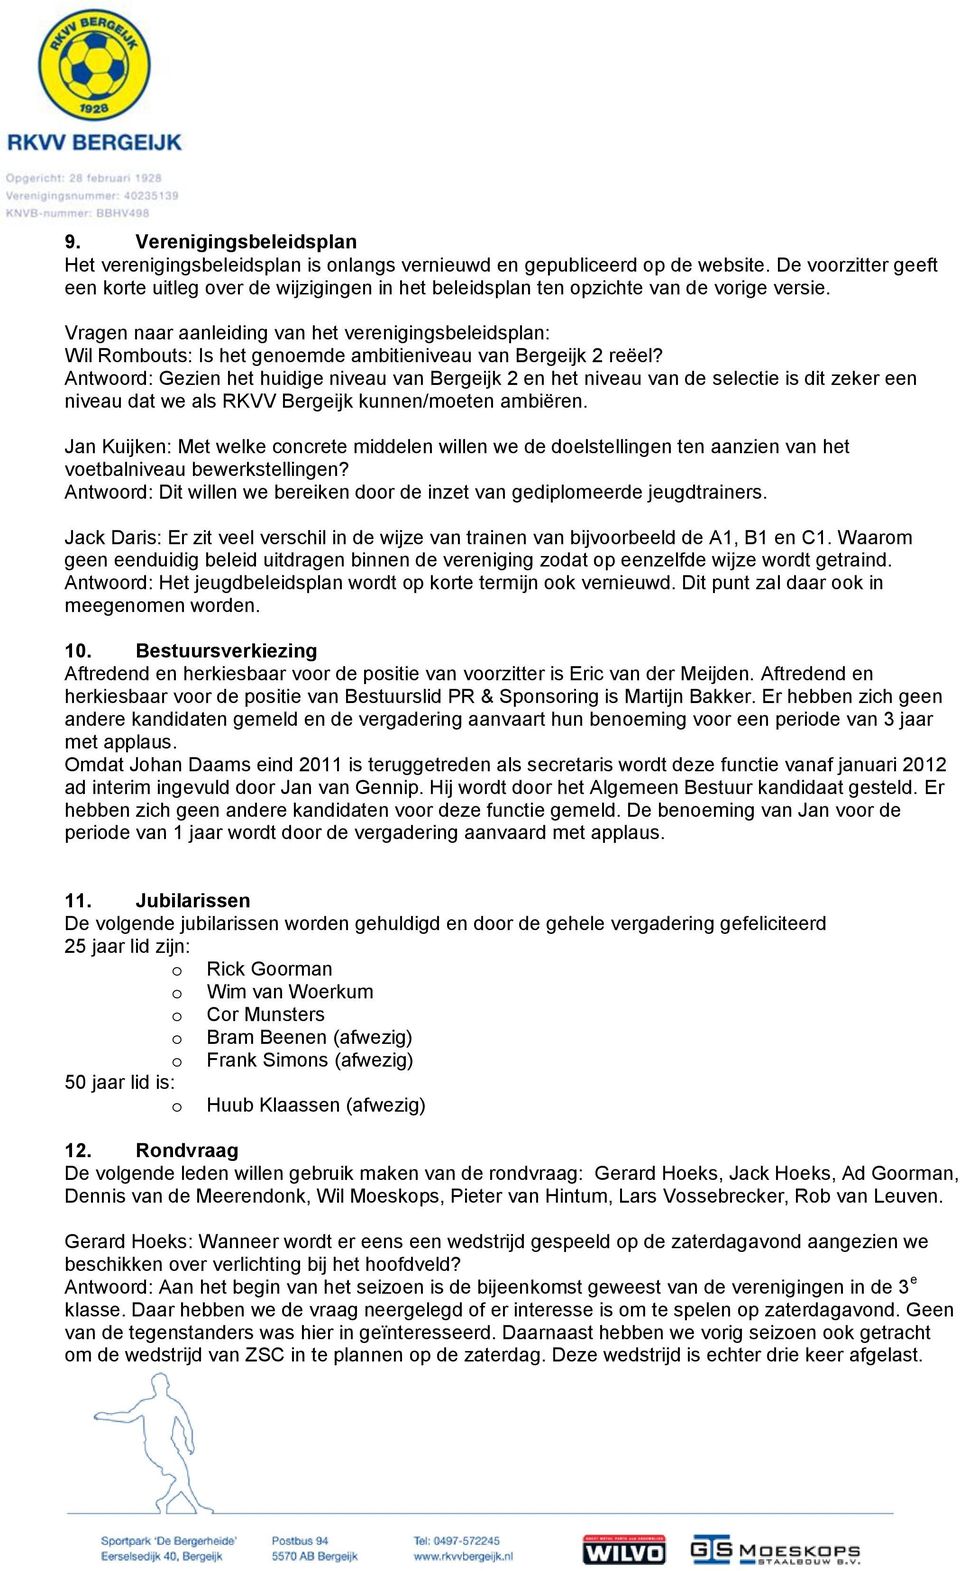 Vragen naar aanleiding van het verenigingsbeleidsplan: Wil Rombouts: Is het genoemde ambitieniveau van Bergeijk 2 reëel?